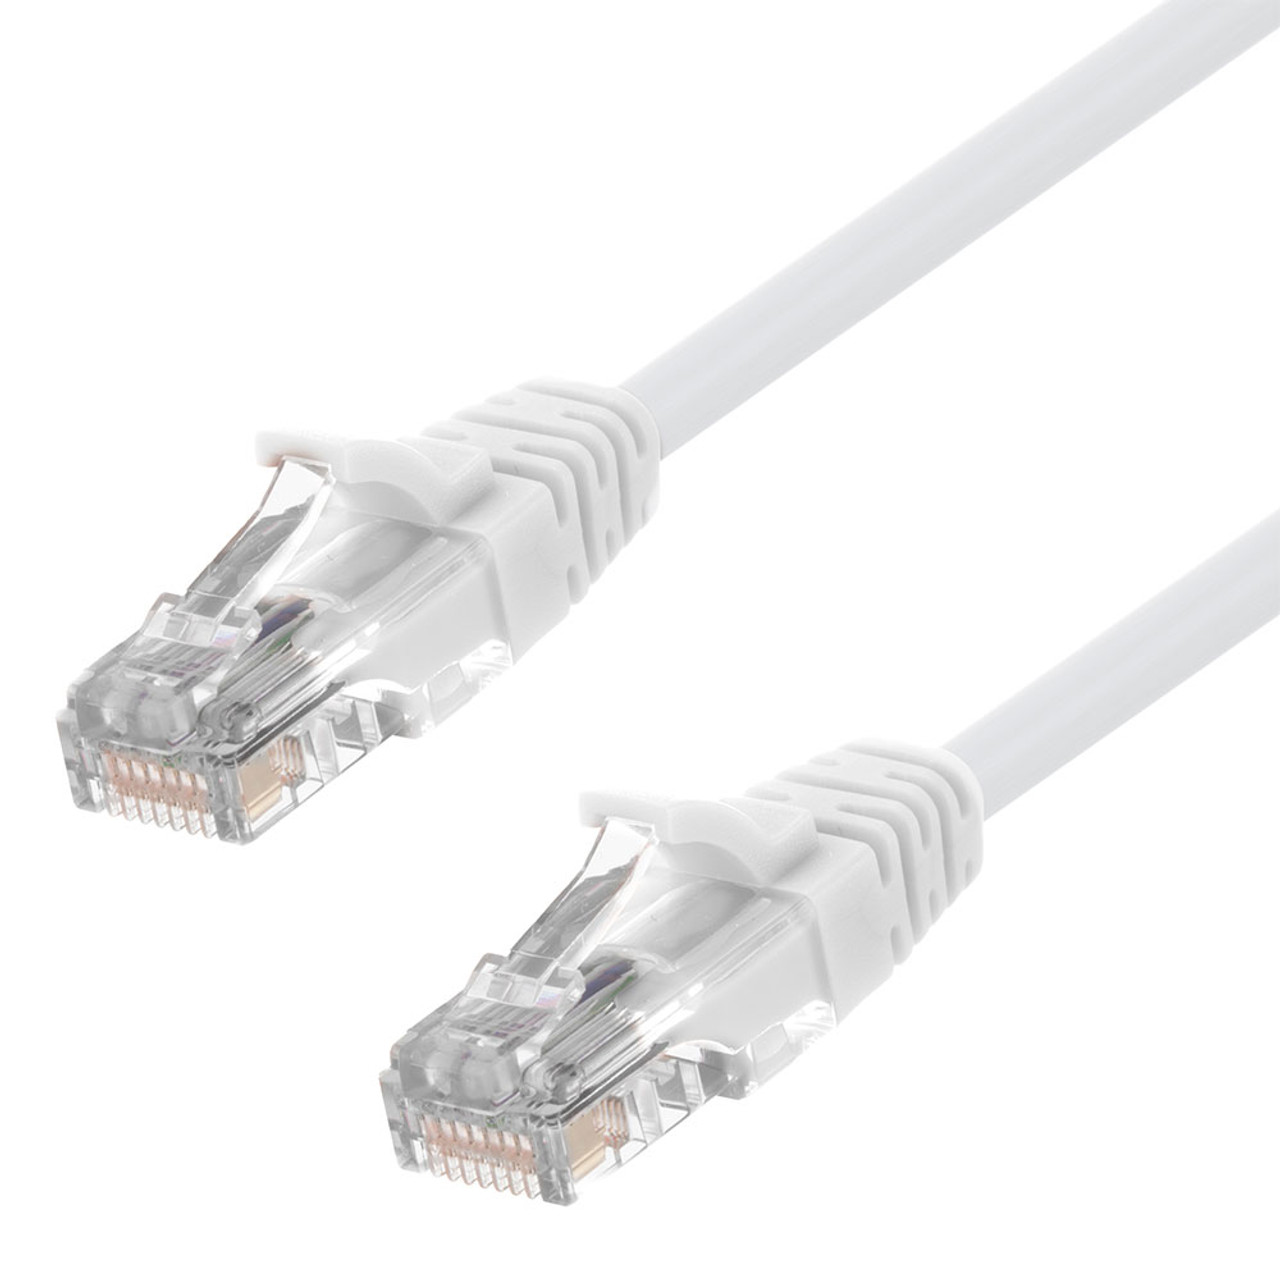 Cable De Red Utp 10 Metros Rj45 Cat 5e Patch Cord Ethernet